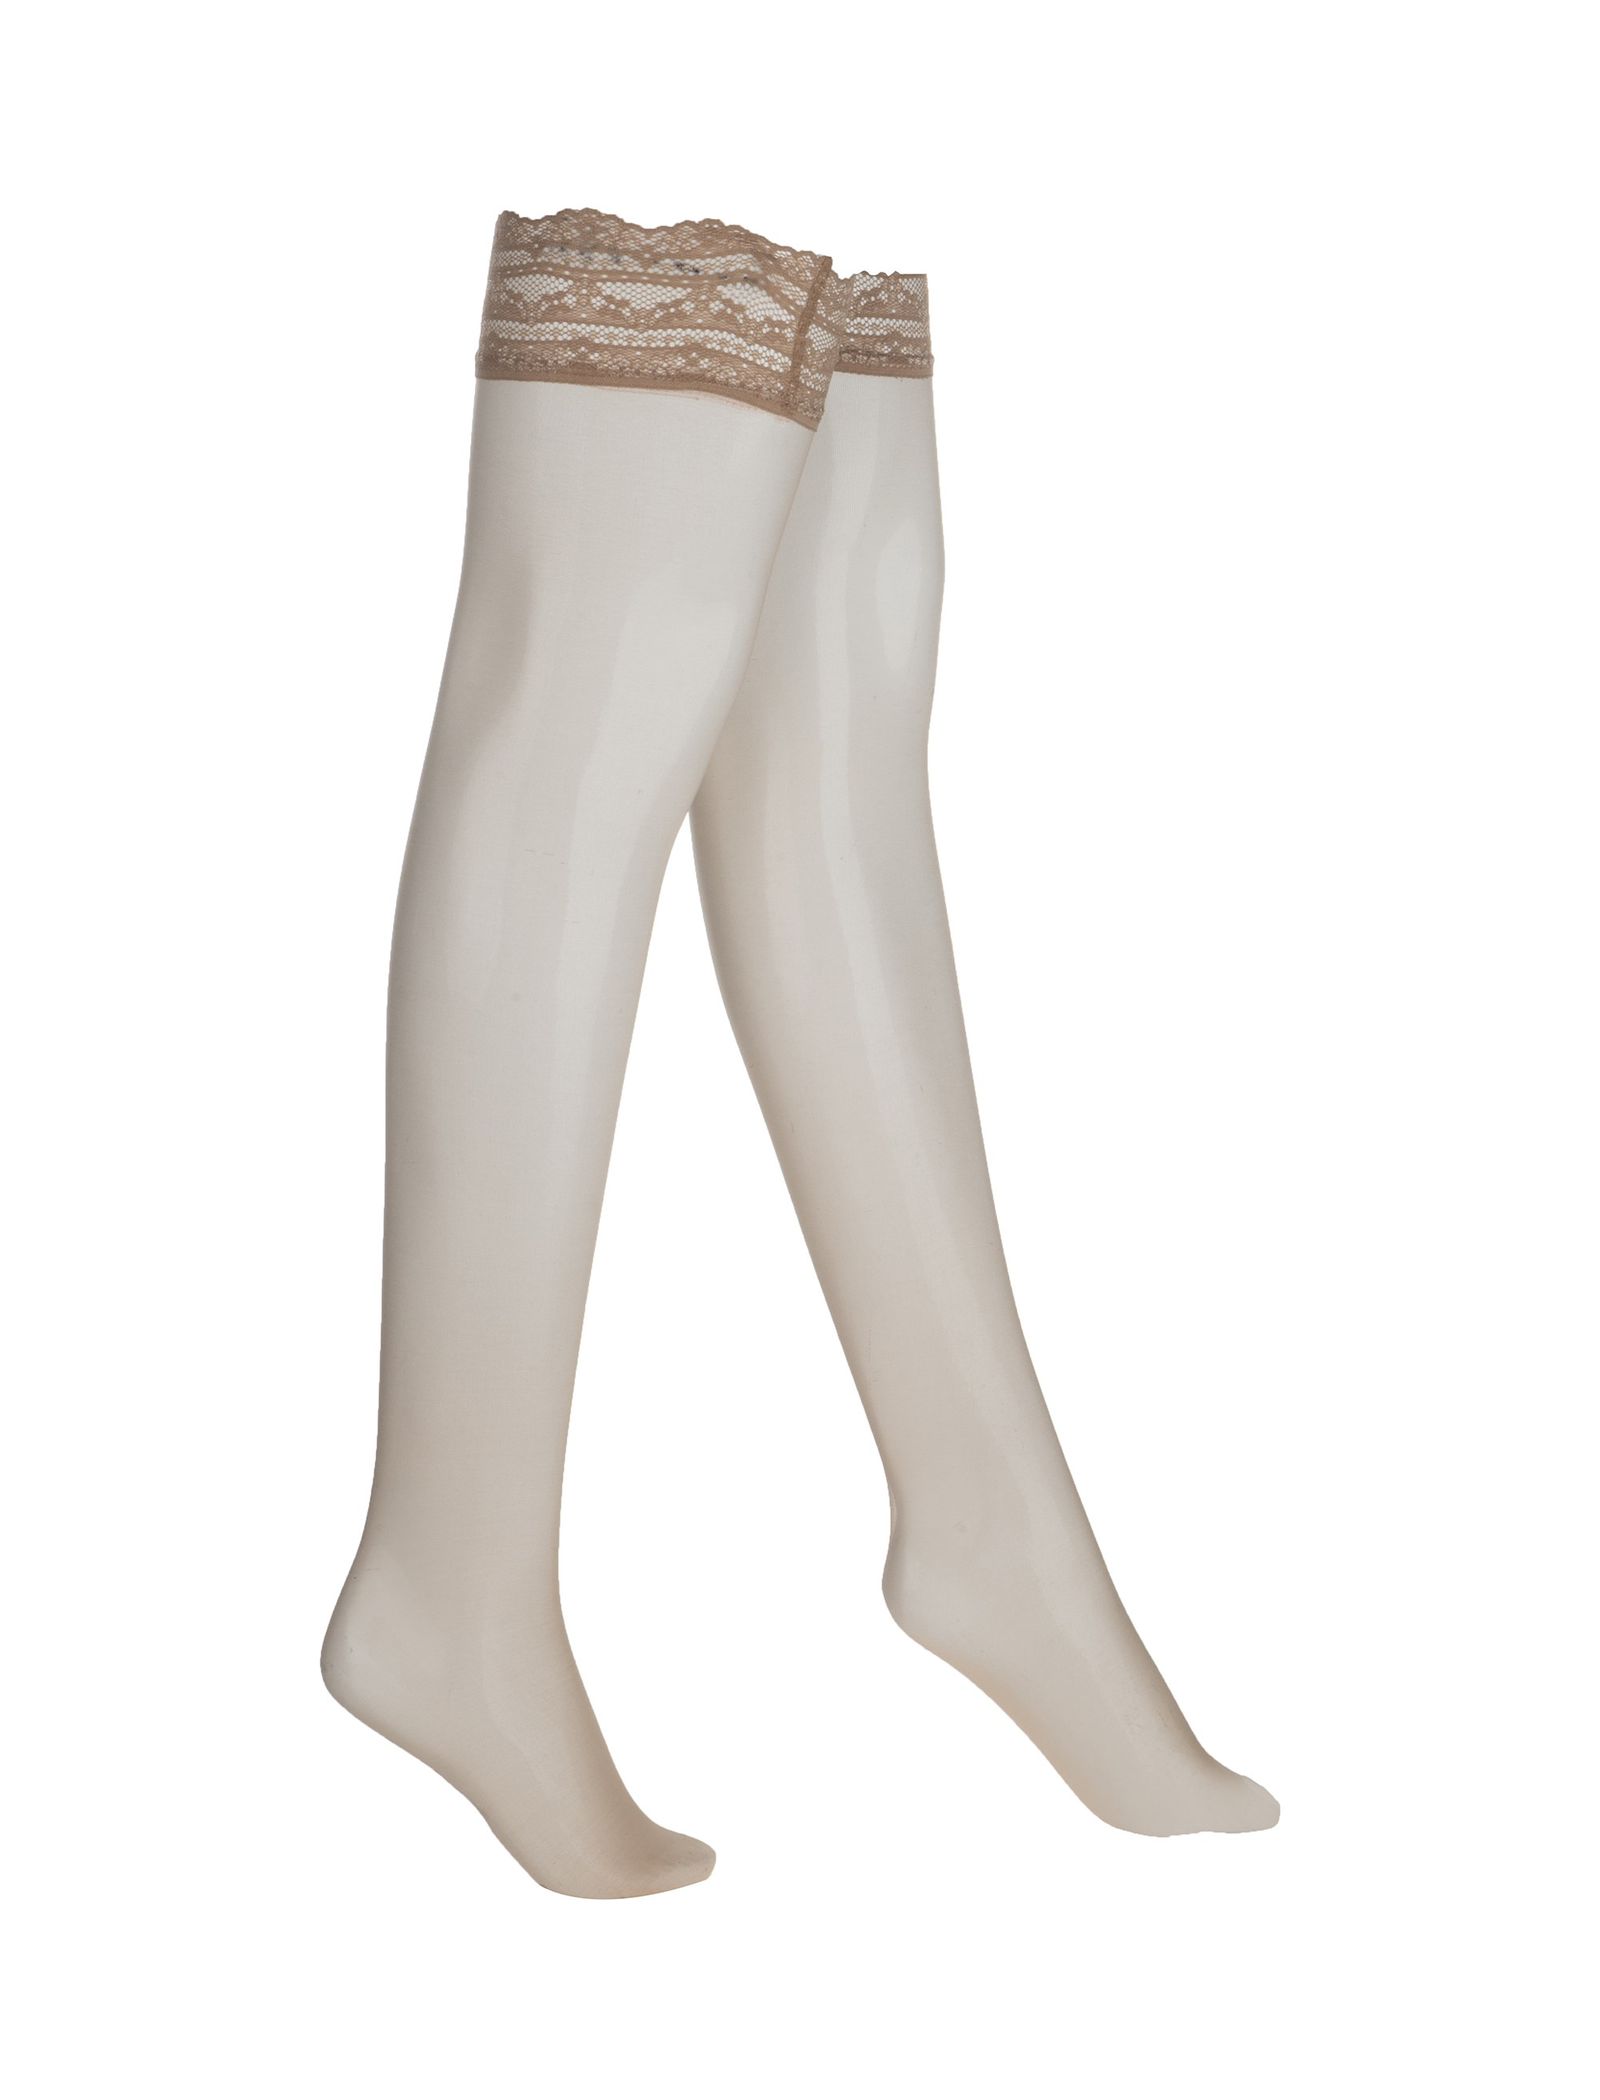 جوراب ساق بلند زنانه - اتام - کرم - 1